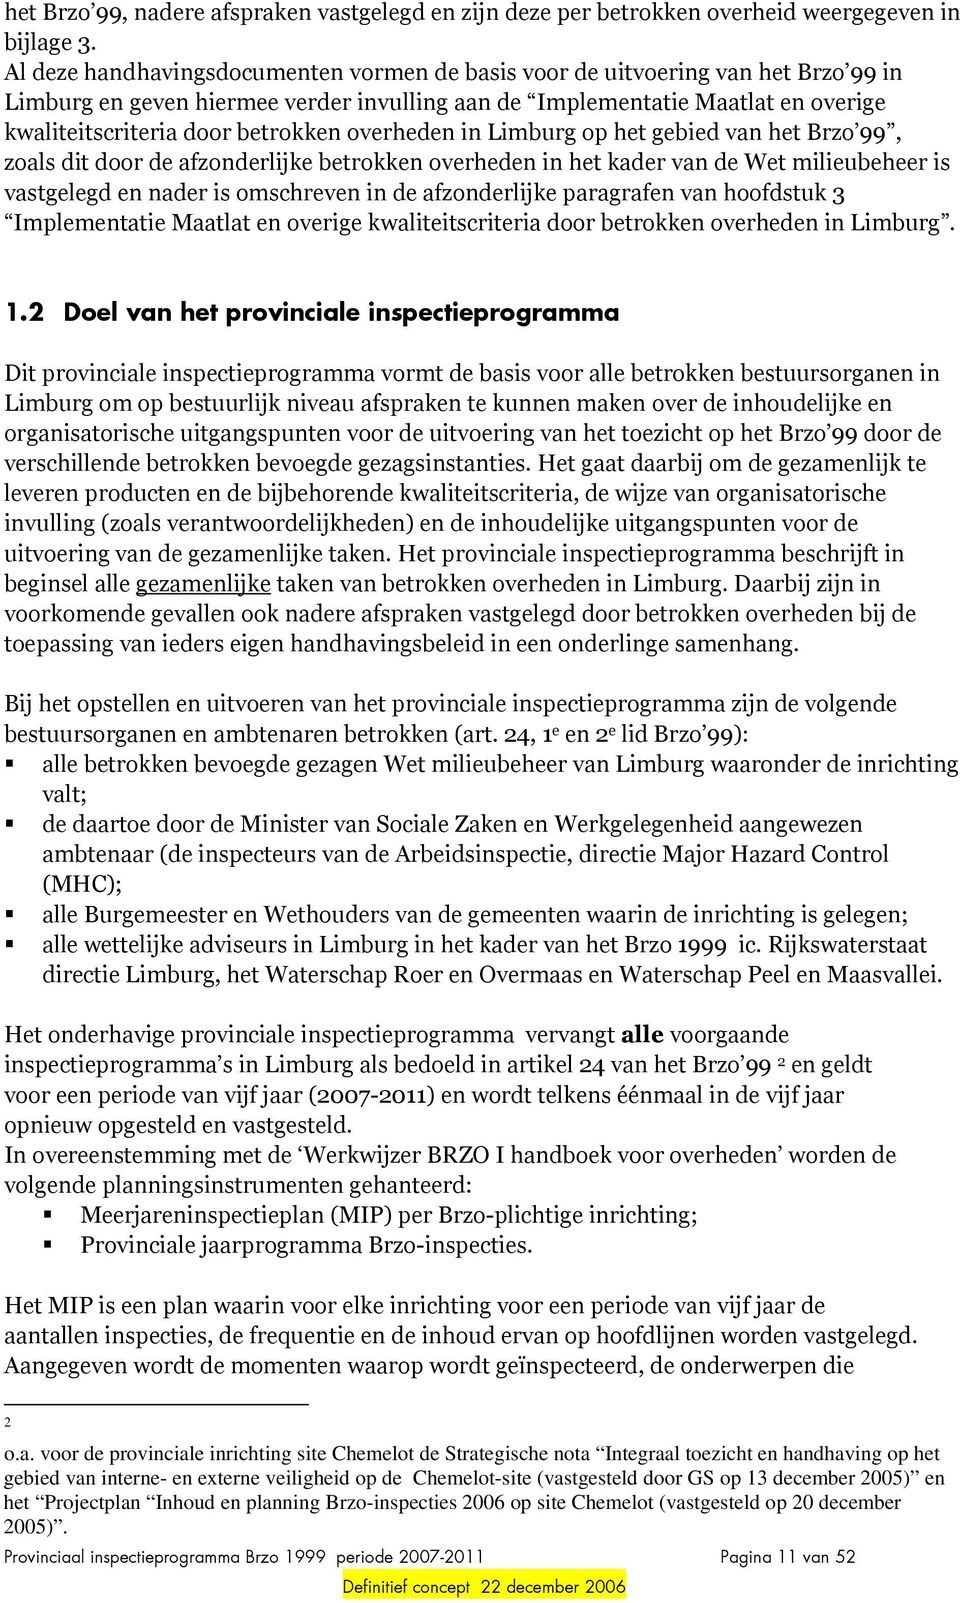 overheden in Limburg op het gebied van het Brzo 99, zoals dit door de afzonderlijke betrokken overheden in het kader van de Wet milieubeheer is vastgelegd en nader is omschreven in de afzonderlijke